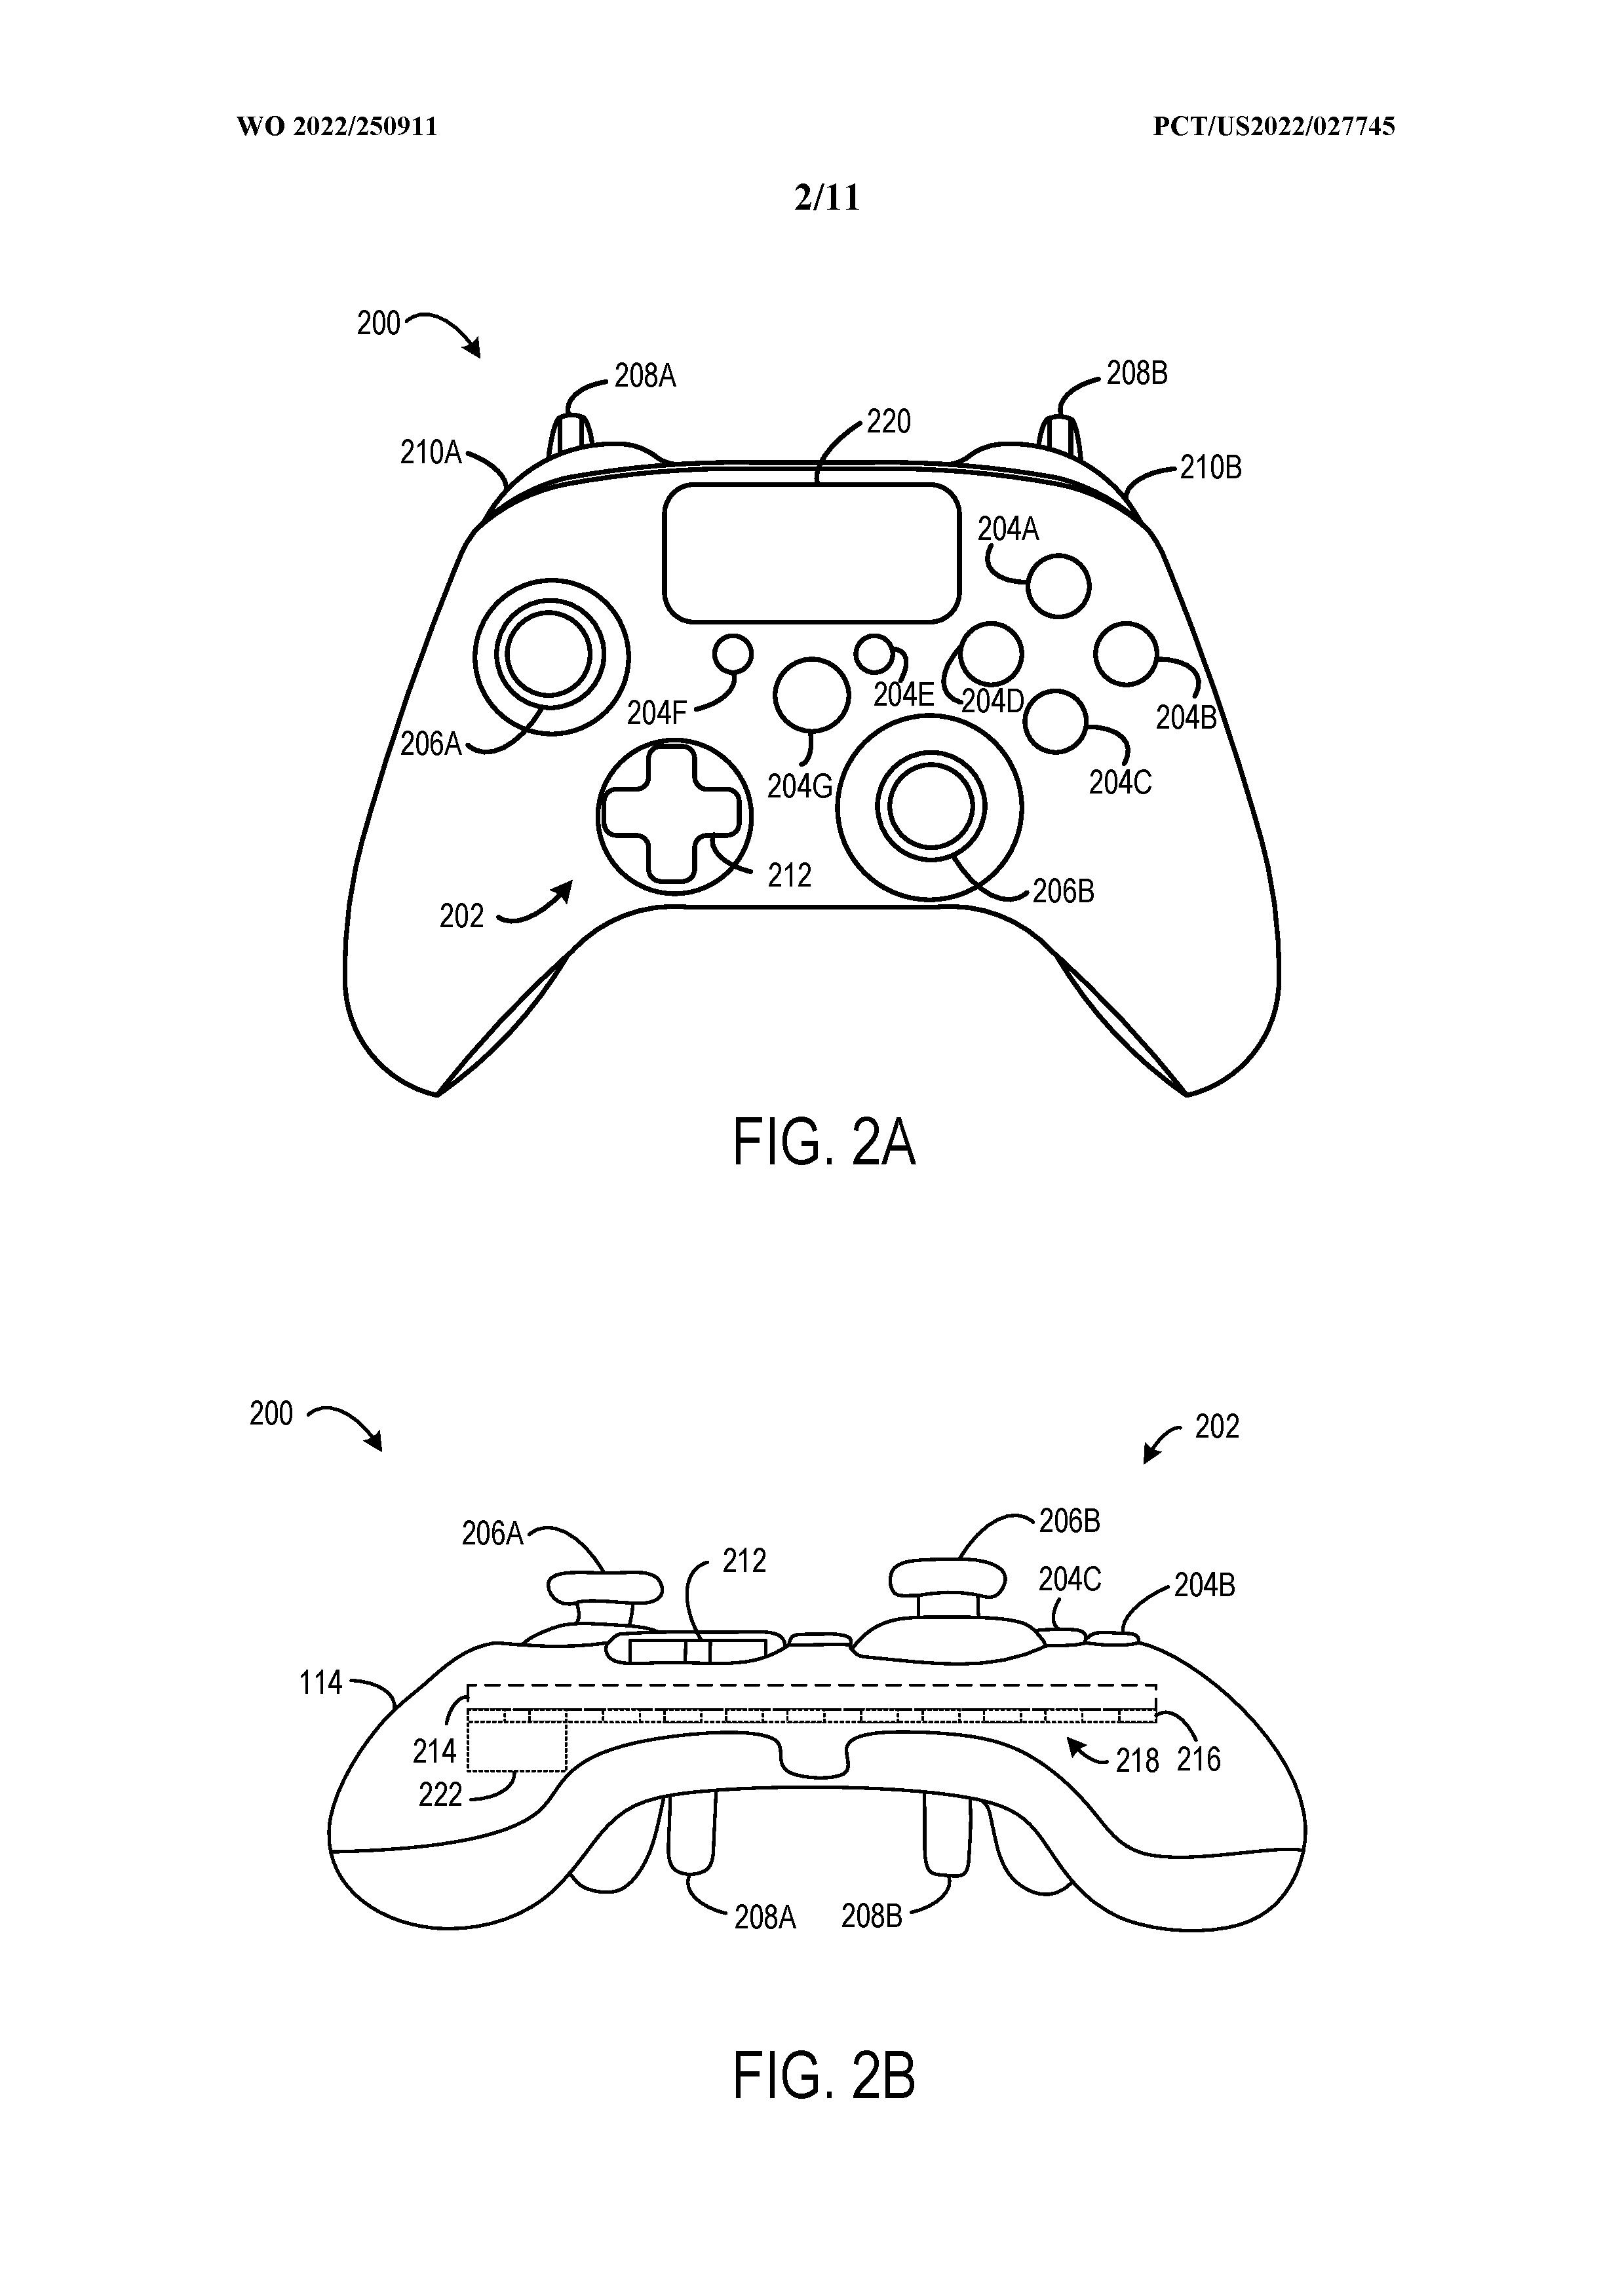 Patente da Microsoft mostra controle do Xbox com tela LCD